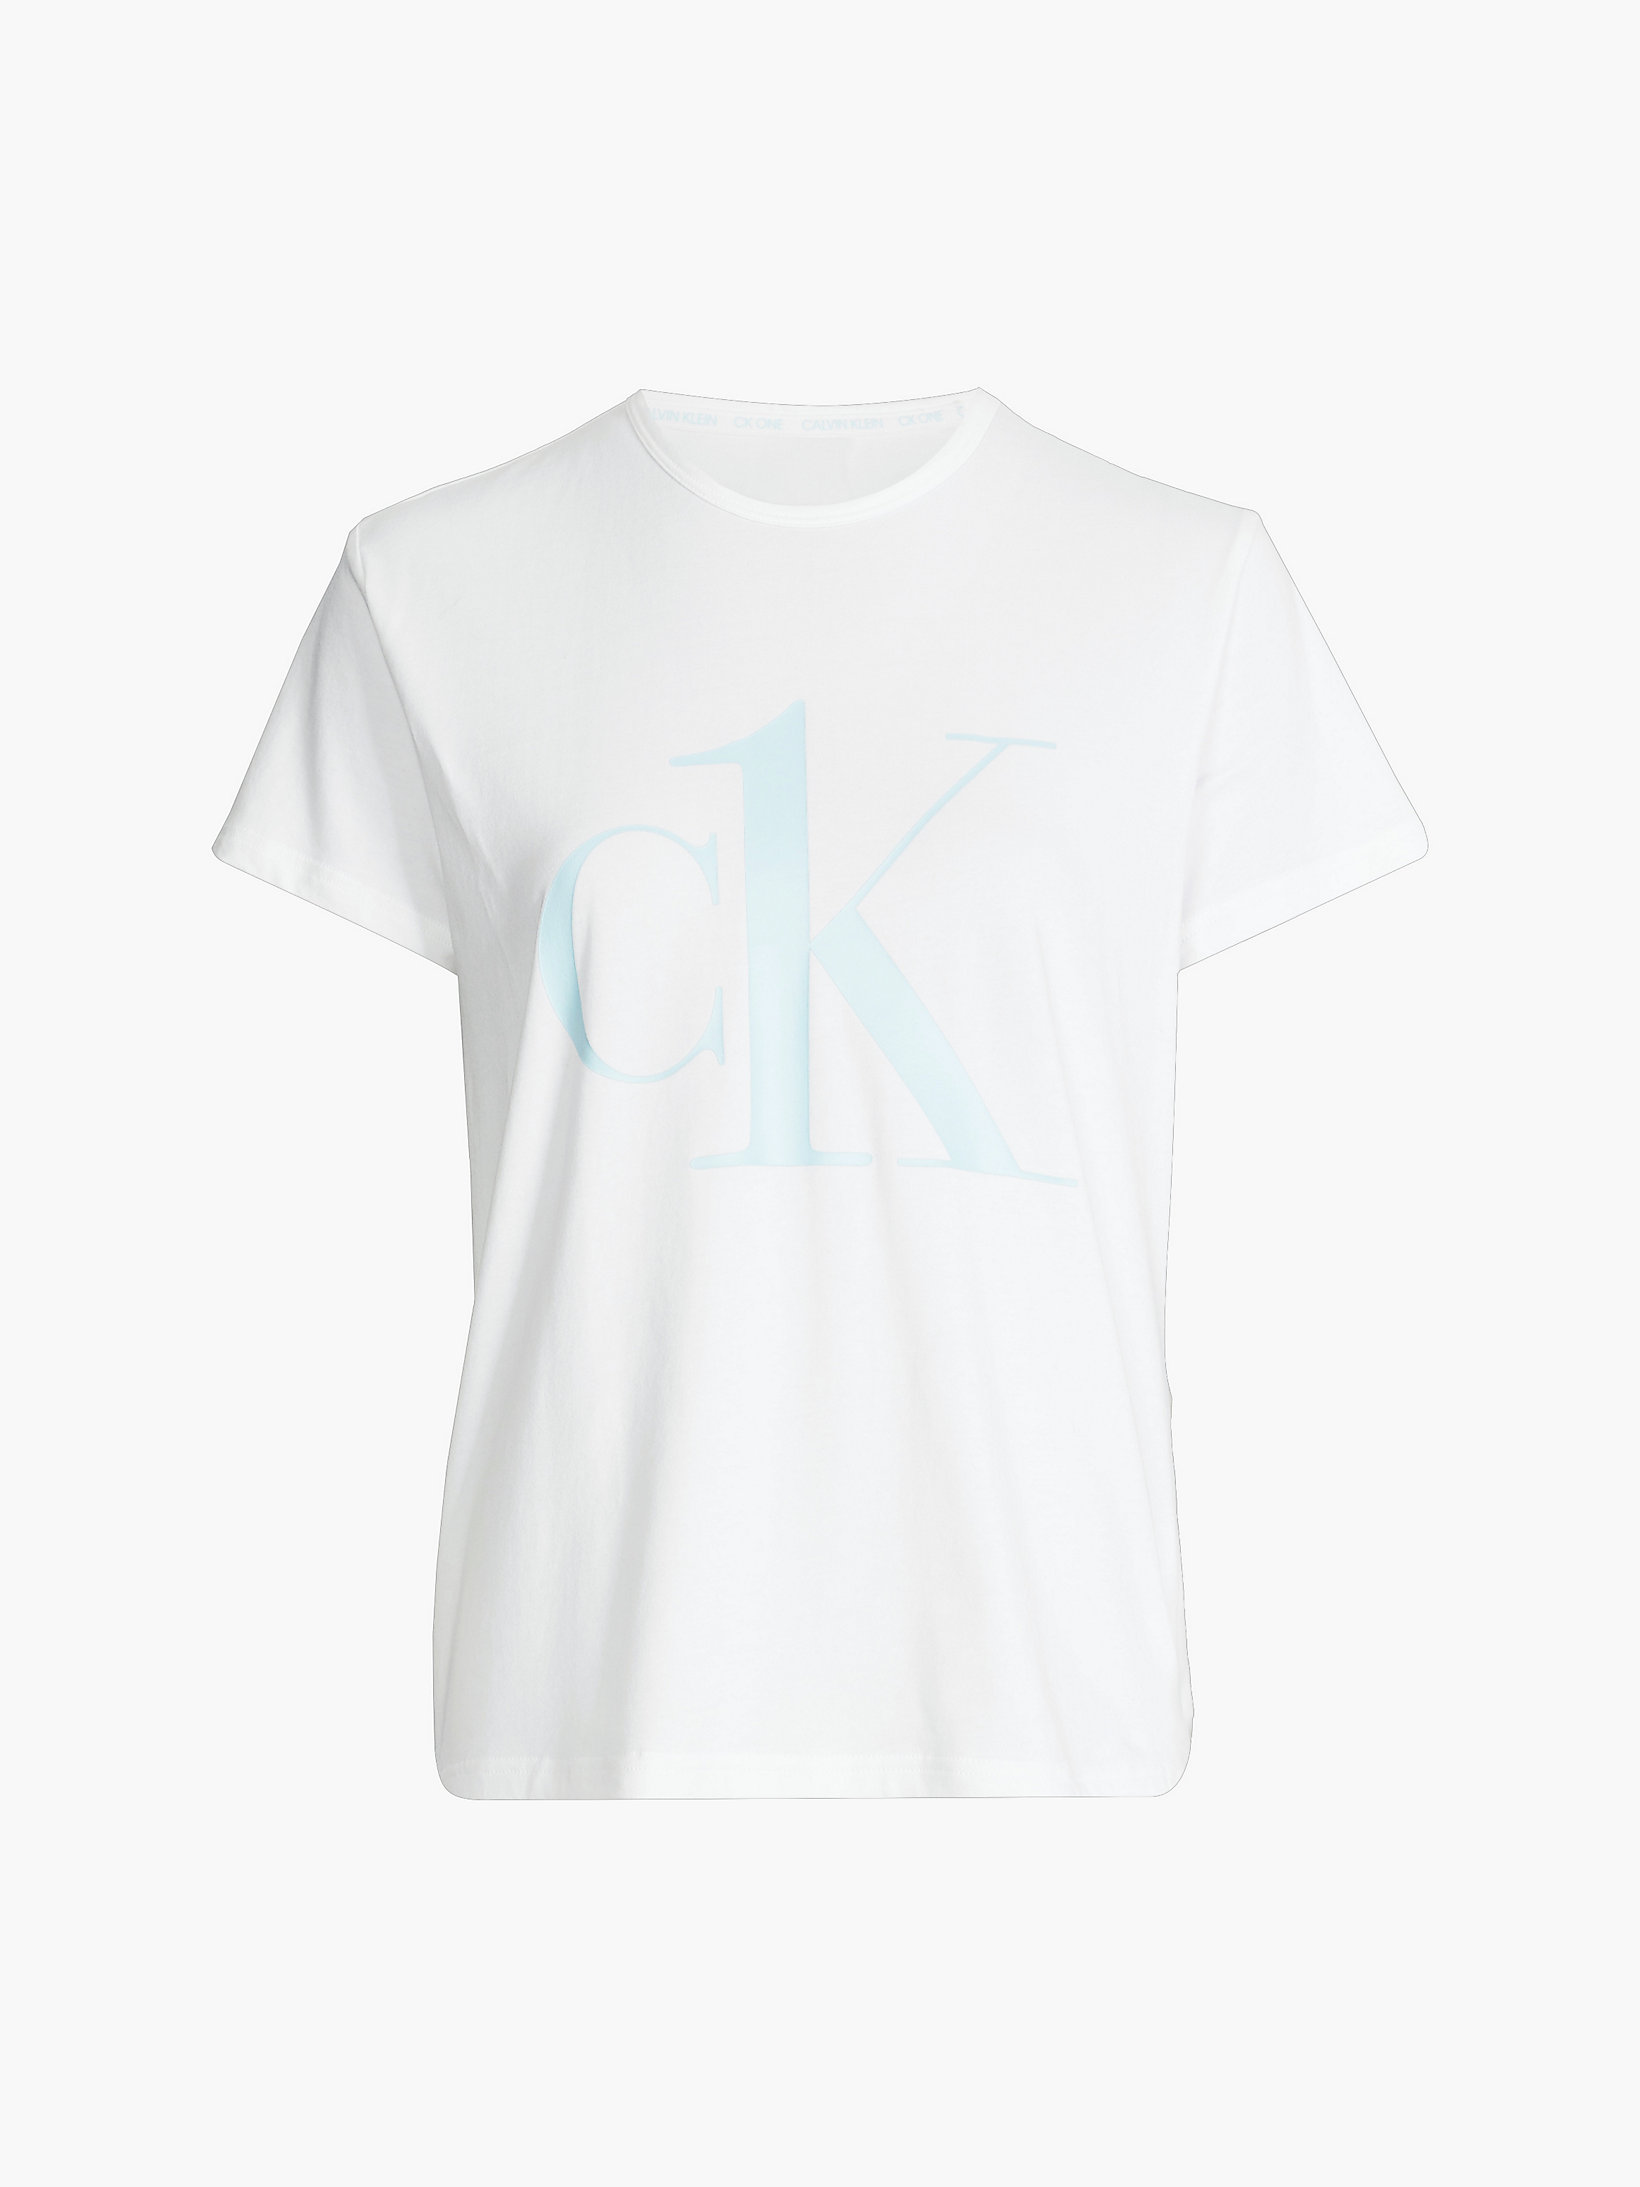 Haut De Pyjama - CK One > White W/ Palest Blue Logo > undefined femmes > Calvin Klein